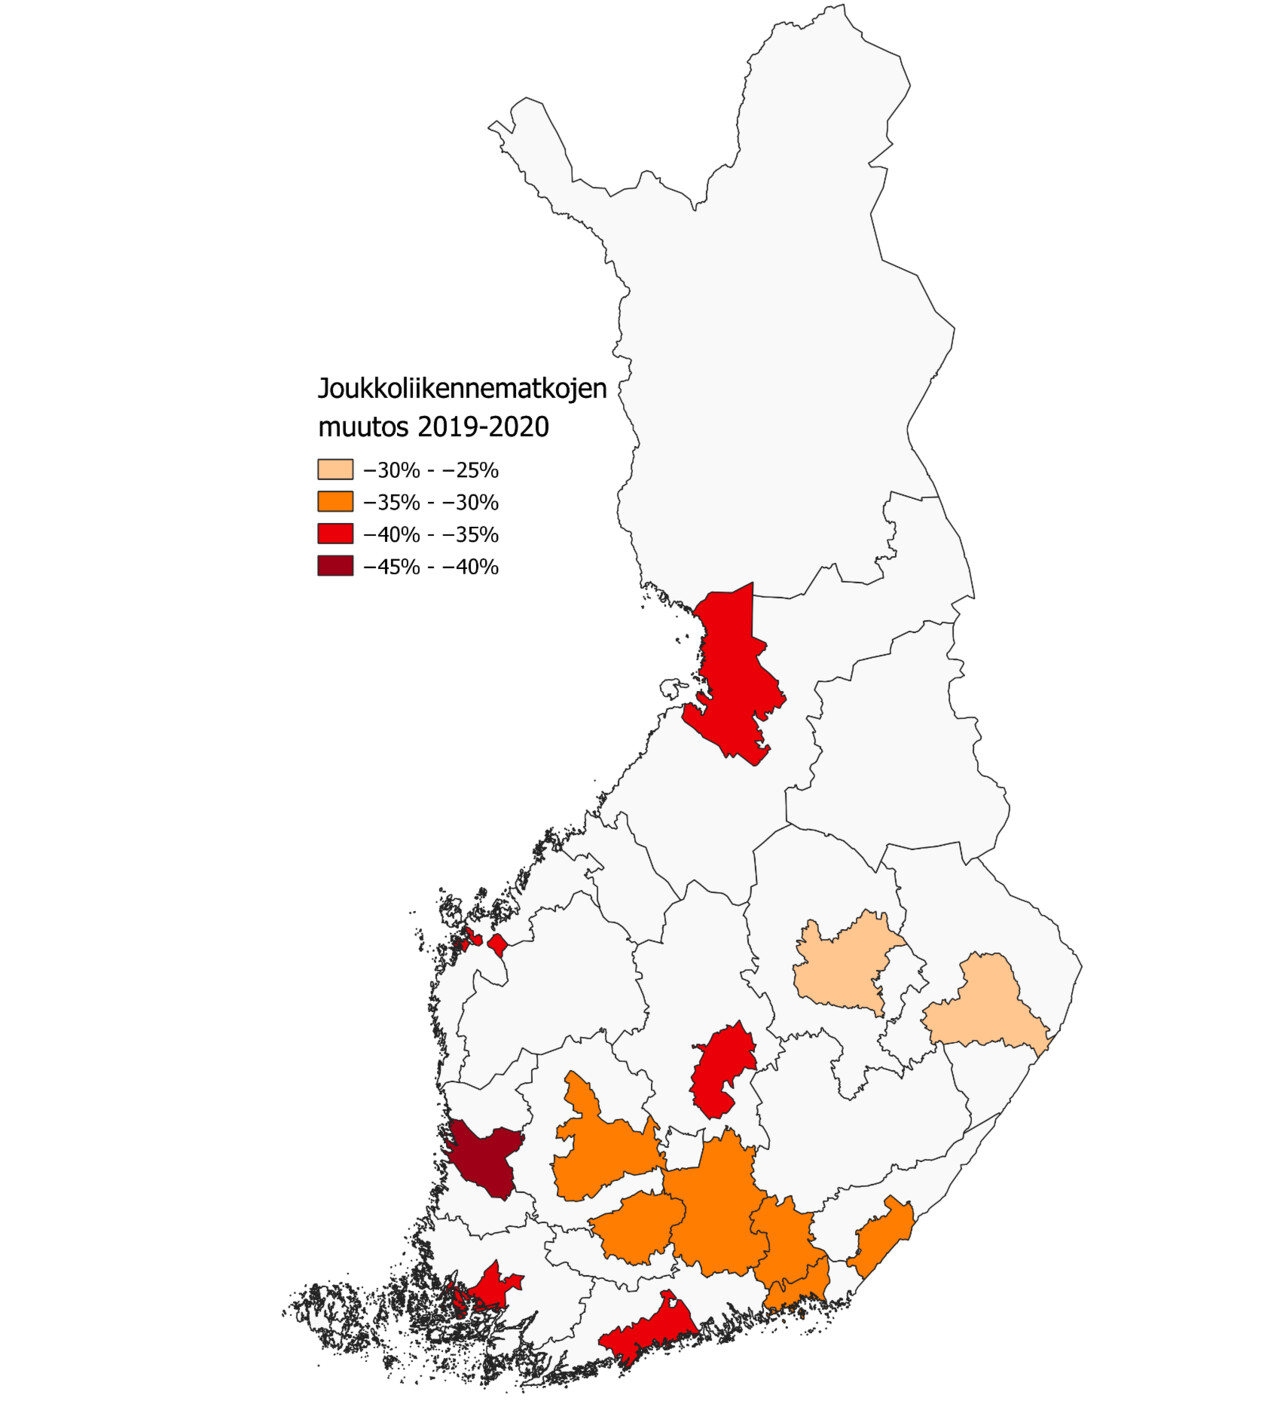 Kuvassa esitetään Suomen kartalla joukkoliikennematkojen muutos 2019-2020 neljässä luokassa. Porissa matkojen vähenemä on ollut suurinta, seuraavaksi suurimmat muutokset ovat olleet Oulussa, Turussa, HSL-alueella ja Jyväskylässä, kolmanneksi suurimmat muutokset ovat olleet Tampere-Lappeenranta akselille sijoittuvilla viranomaisalueilla ja neljänneksi suurimmat vaikutukset Kuopiossa ja Joensuussa.